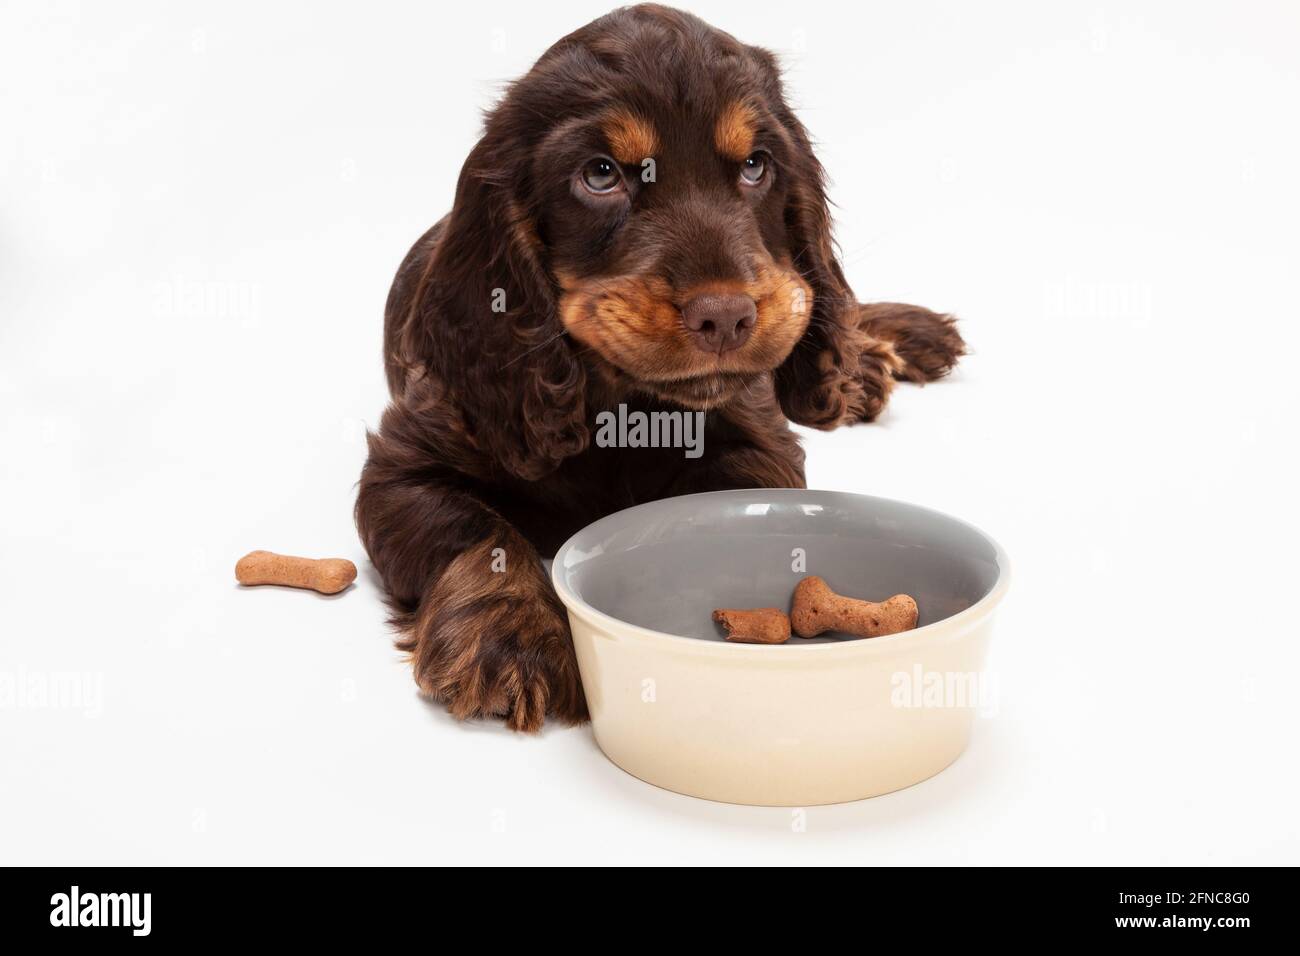 Lindo perro cachorro Cocker Spaniel buscando de comer deshuesado galletas con forma en un tazón para perros Foto de stock